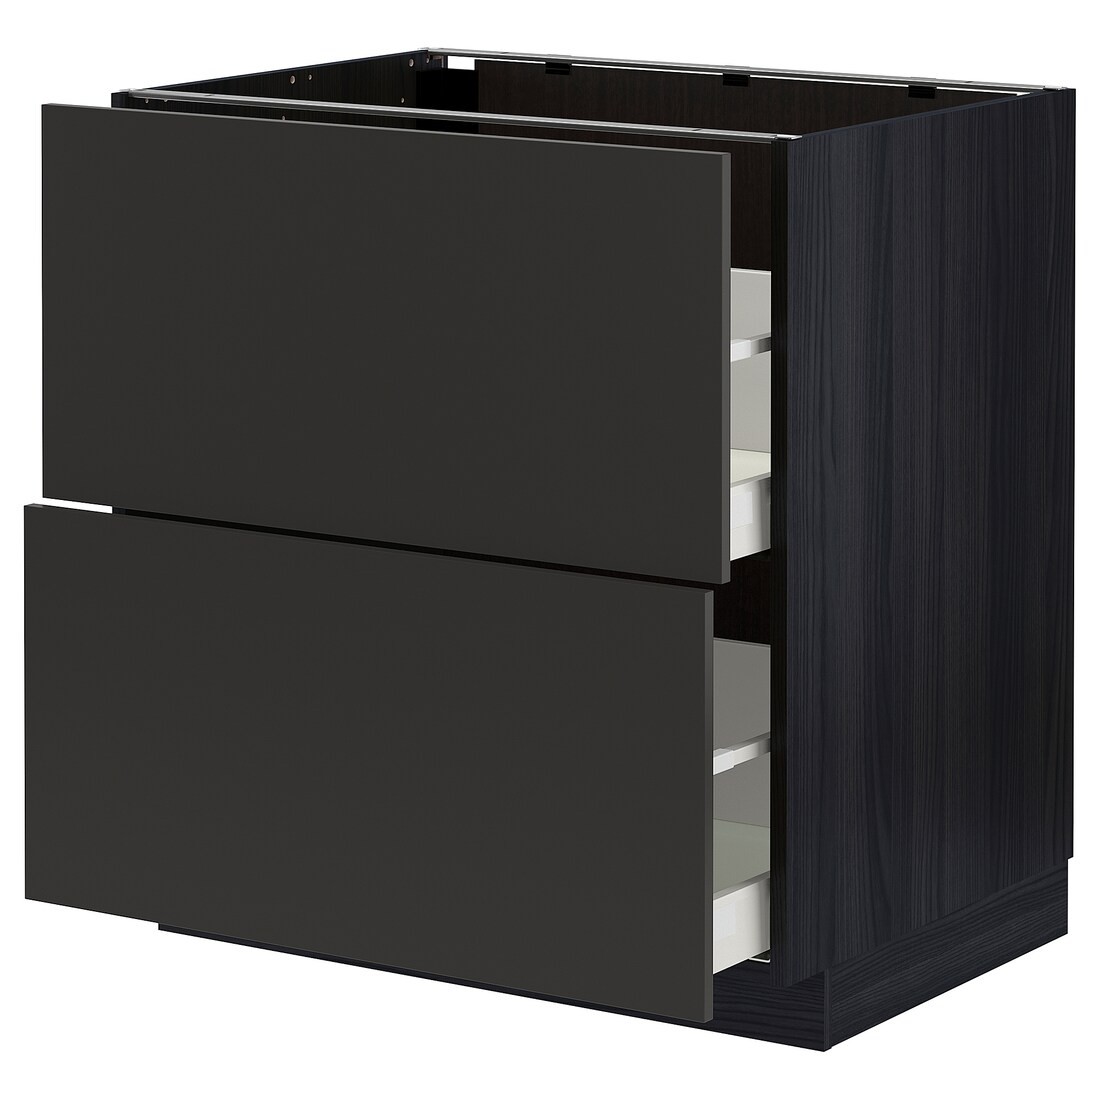 IKEA METOD МЕТОД / MAXIMERA МАКСИМЕРА Напольный шкаф с ящиками, черный / Nickebo матовый антрацит, 80x60 см 19497378 194.973.78